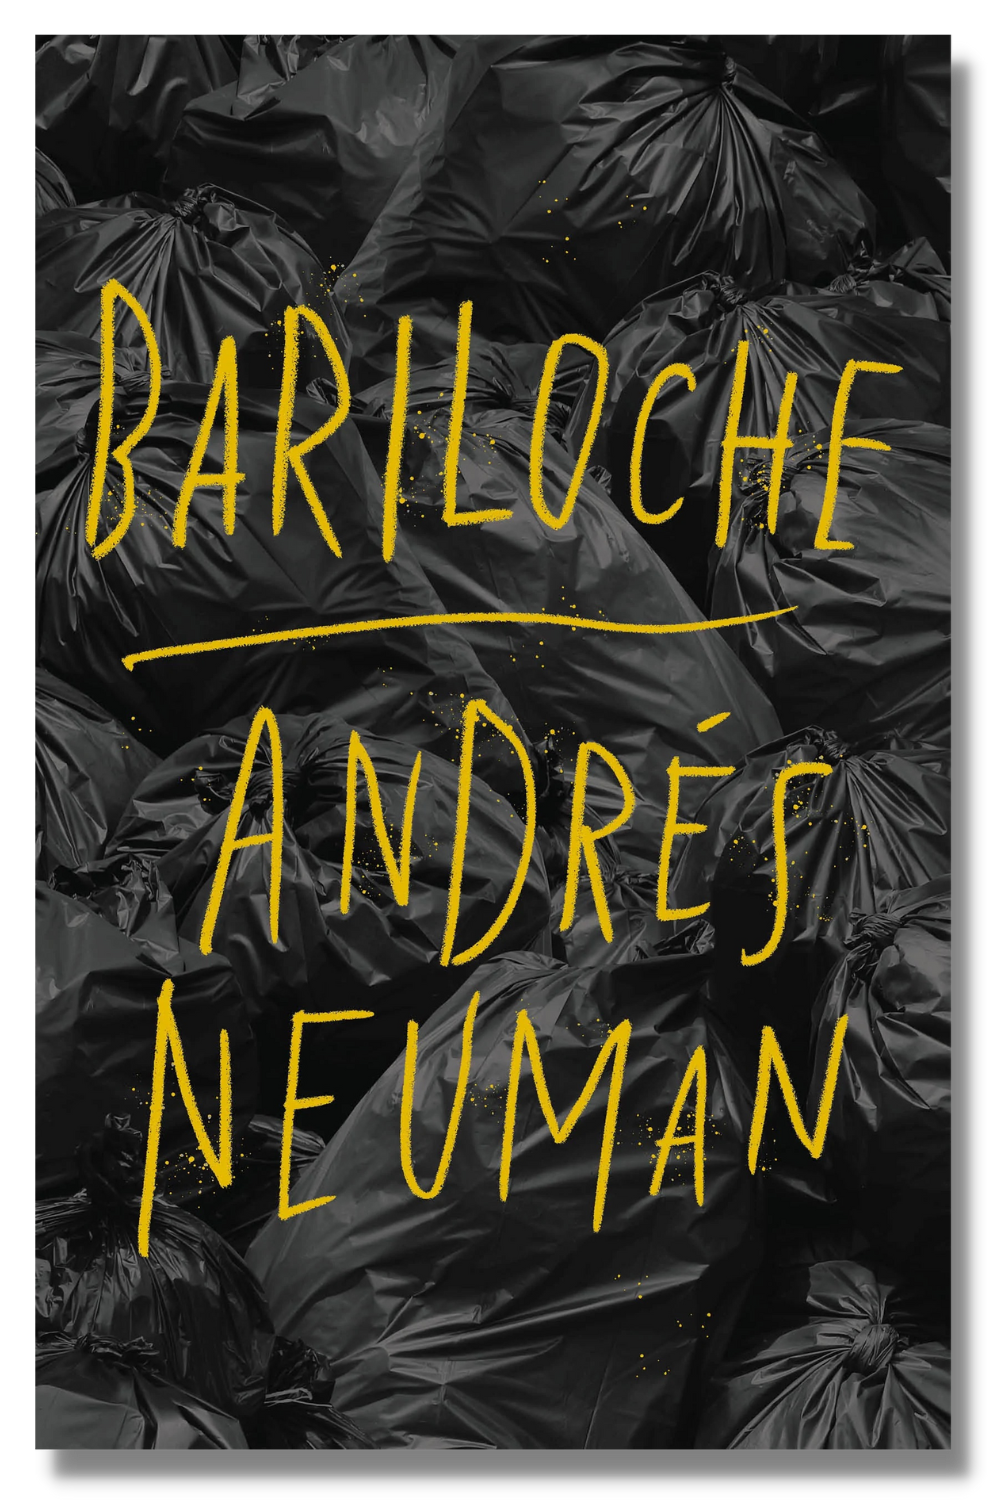 The cover of "Bariloche"